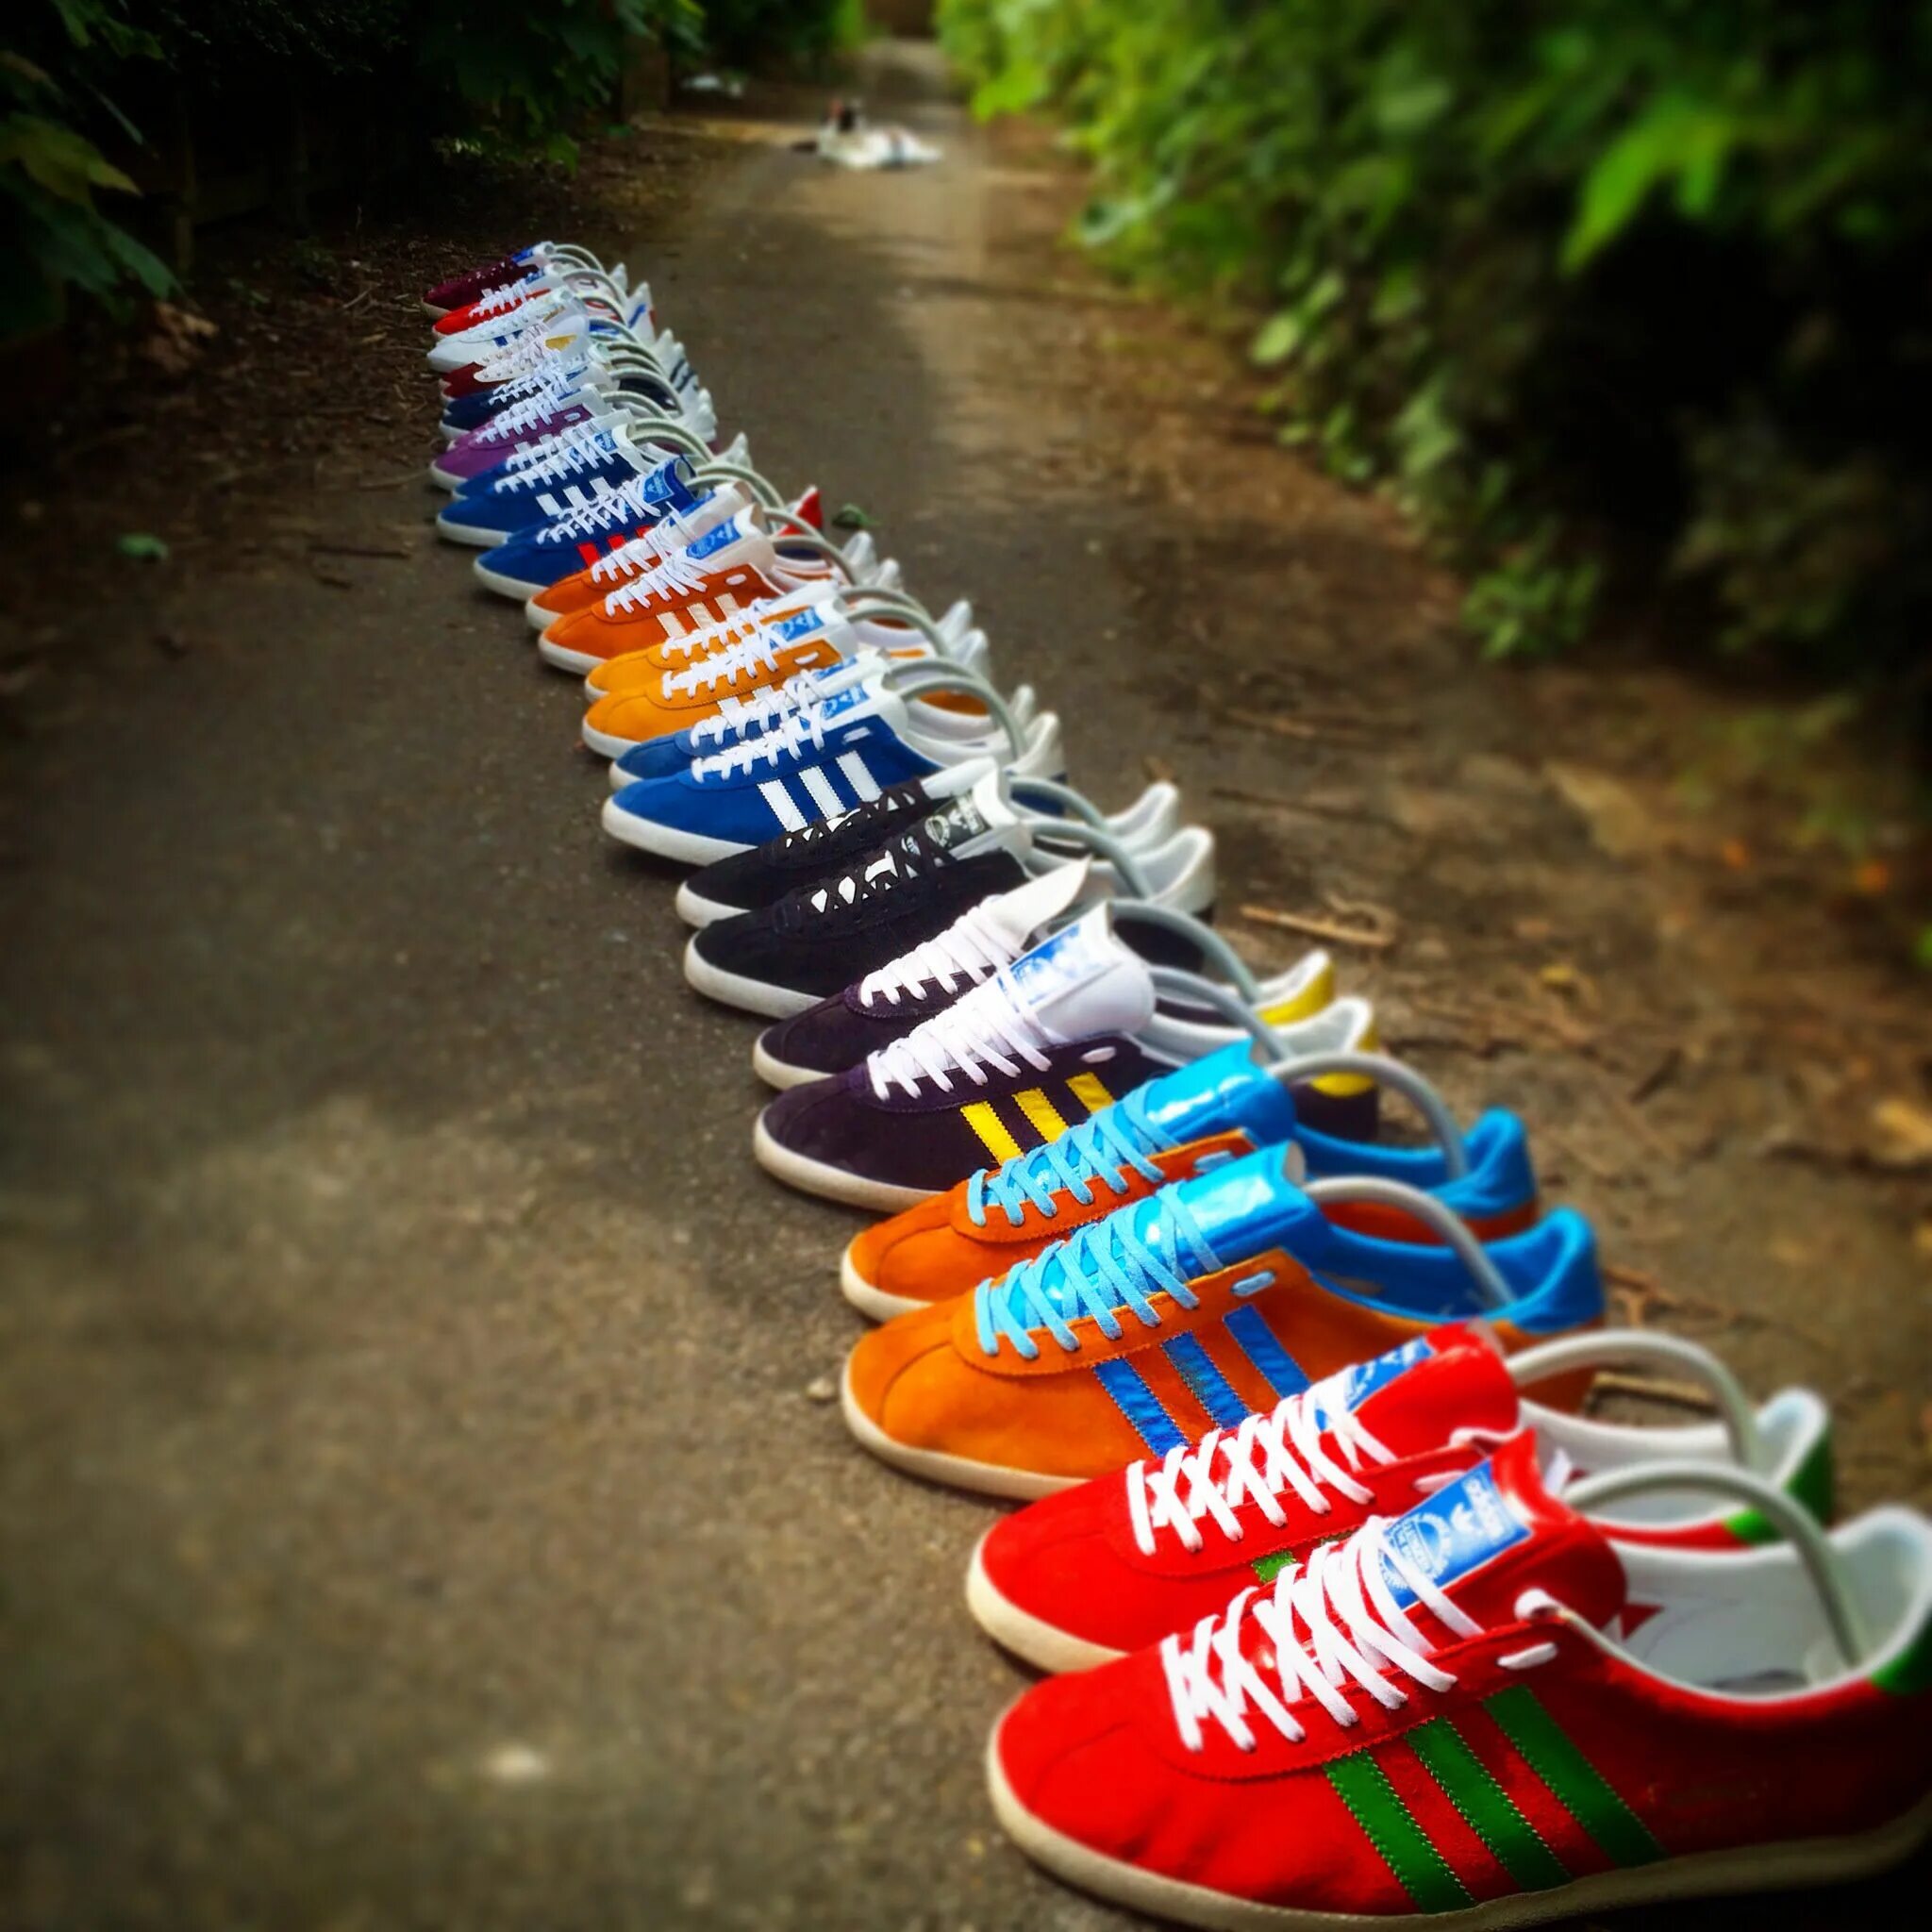 Adidas Gazelle разноцветные. Adidas Dublin разноцветные. Adidas разноцветные кроссовки. Кеды адидас разноцветные. Адидас цветные